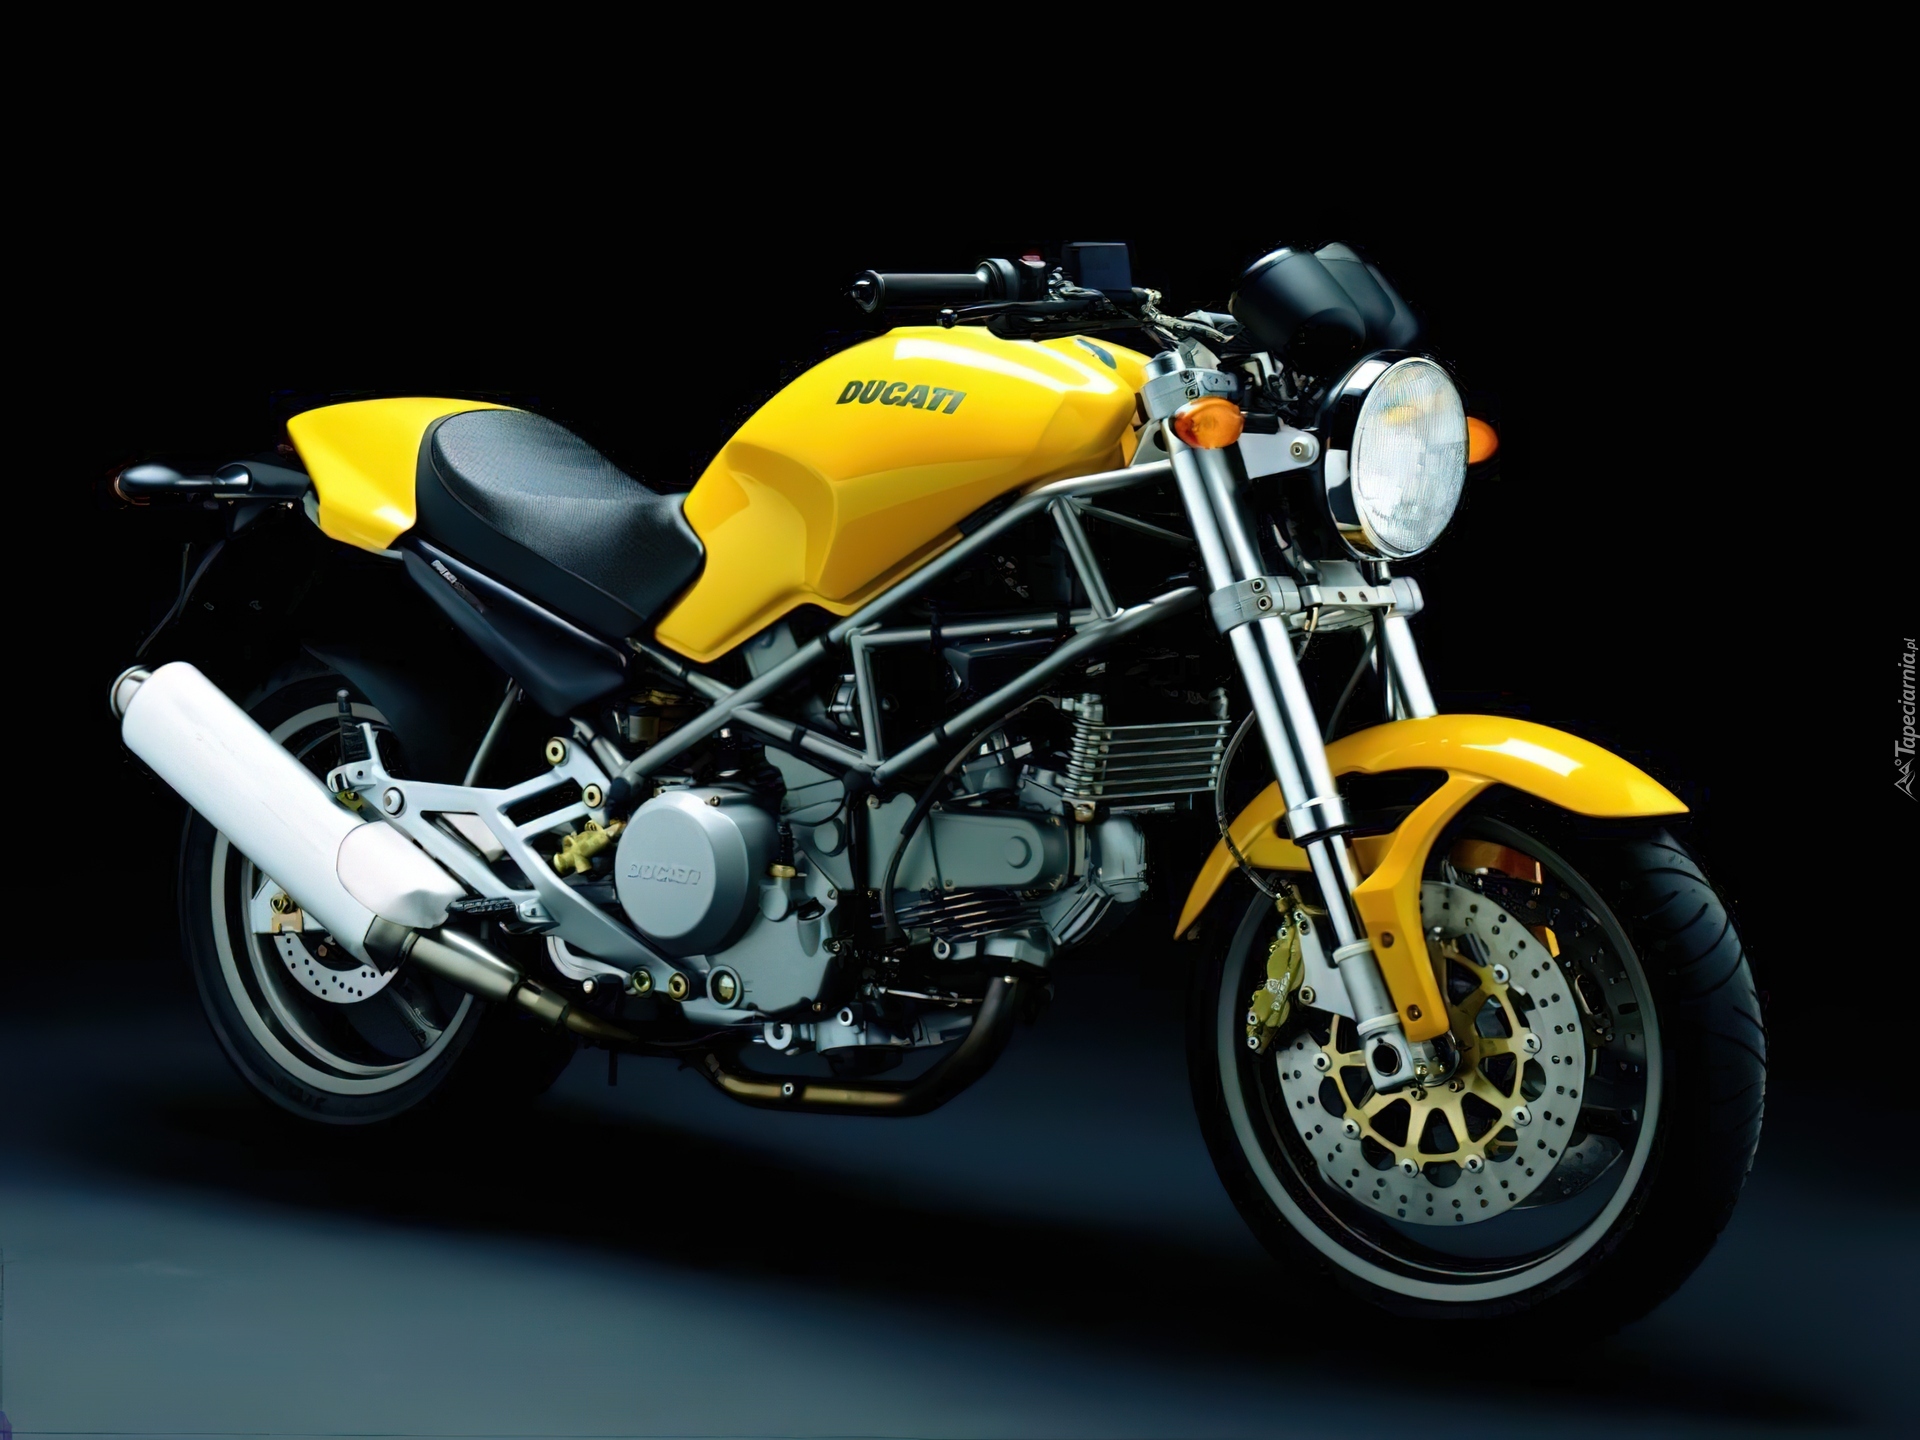 żółty, Ducati Monster 695